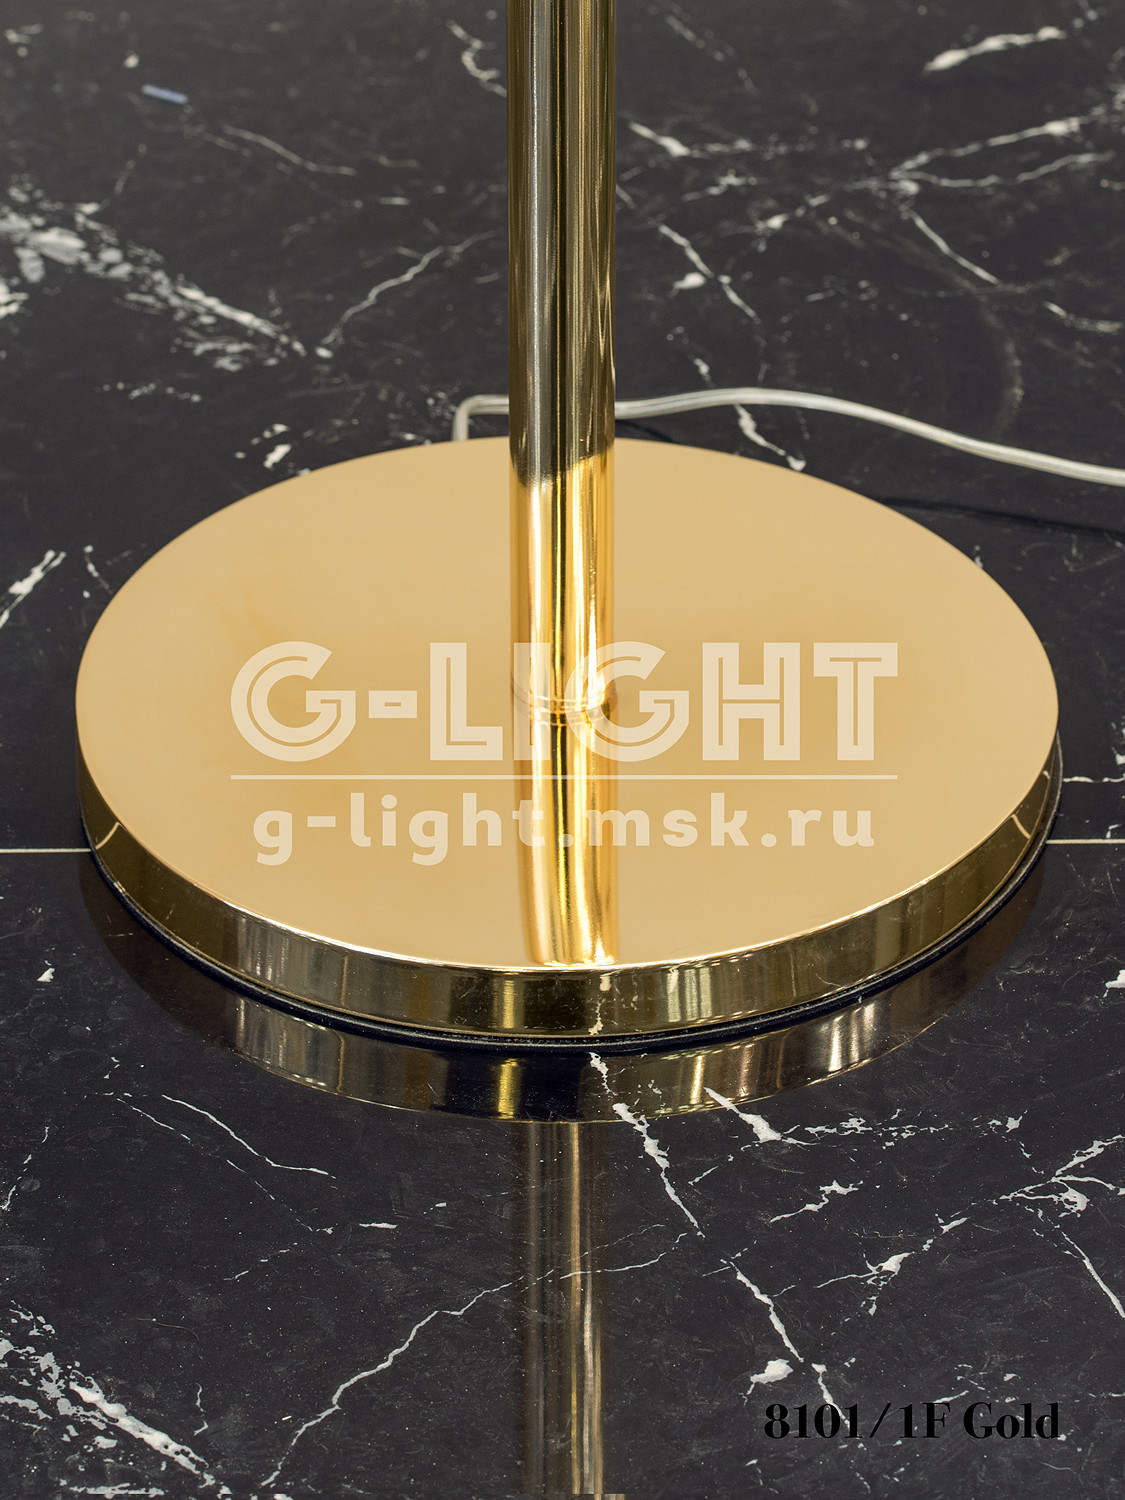 Торшер G-Light 8101/1F Gold - изображение 4